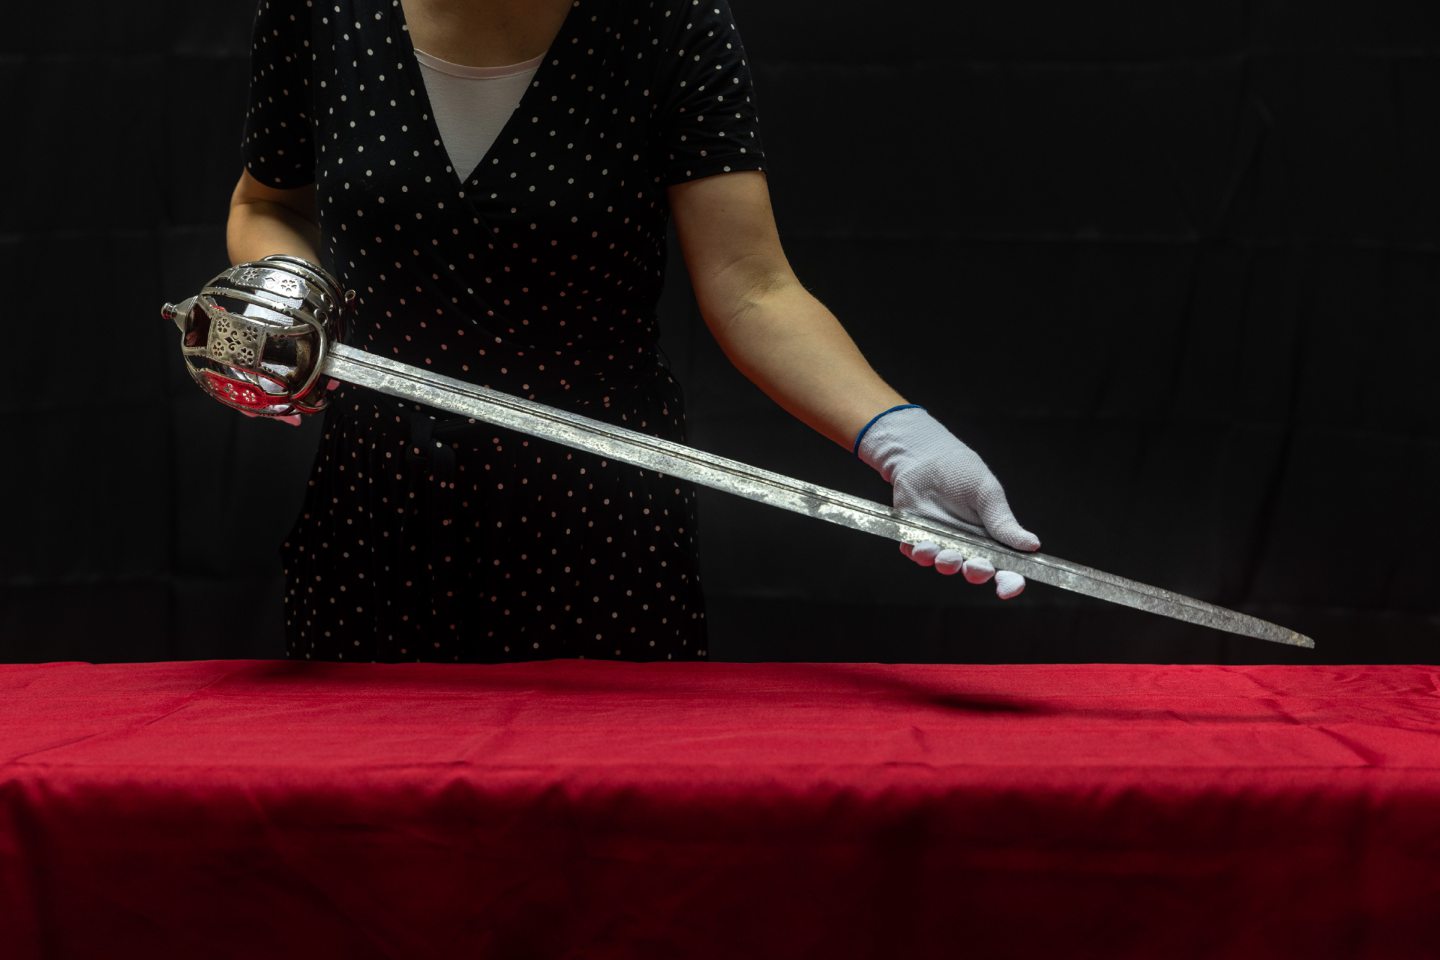 Bonnie Prince Charlie's sword